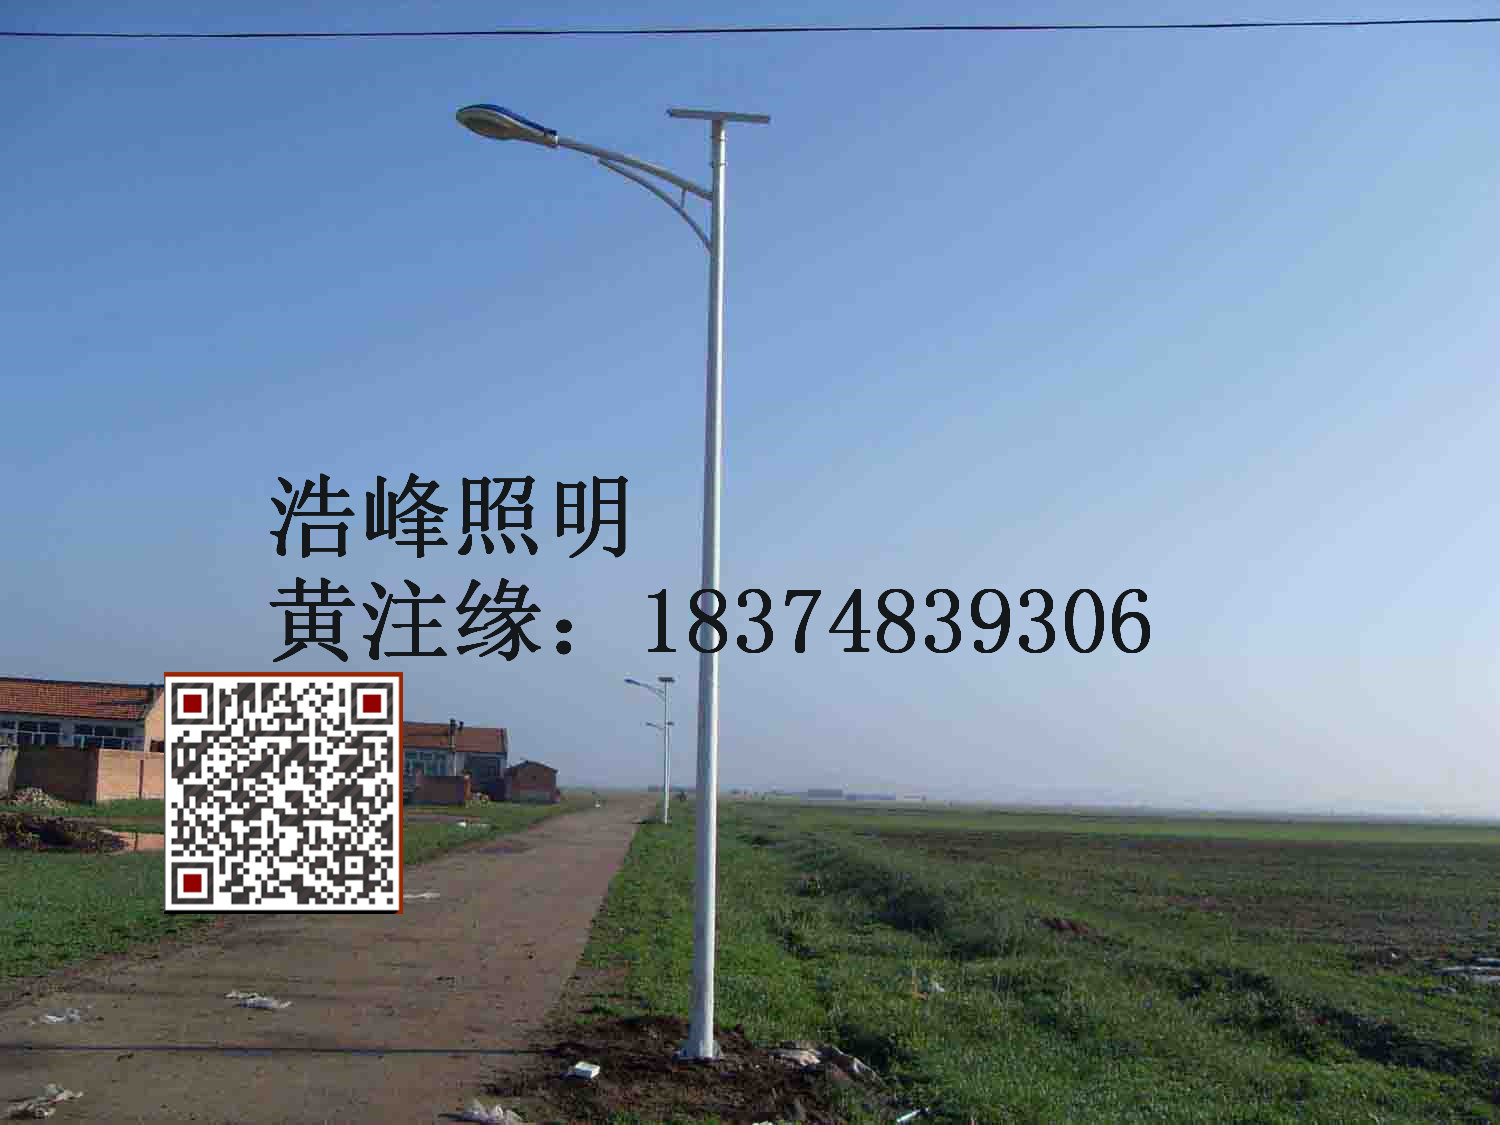 湖南省常德市太阳能路灯 湖南浩峰各款式路灯厂价直销 7米太阳能路灯价格